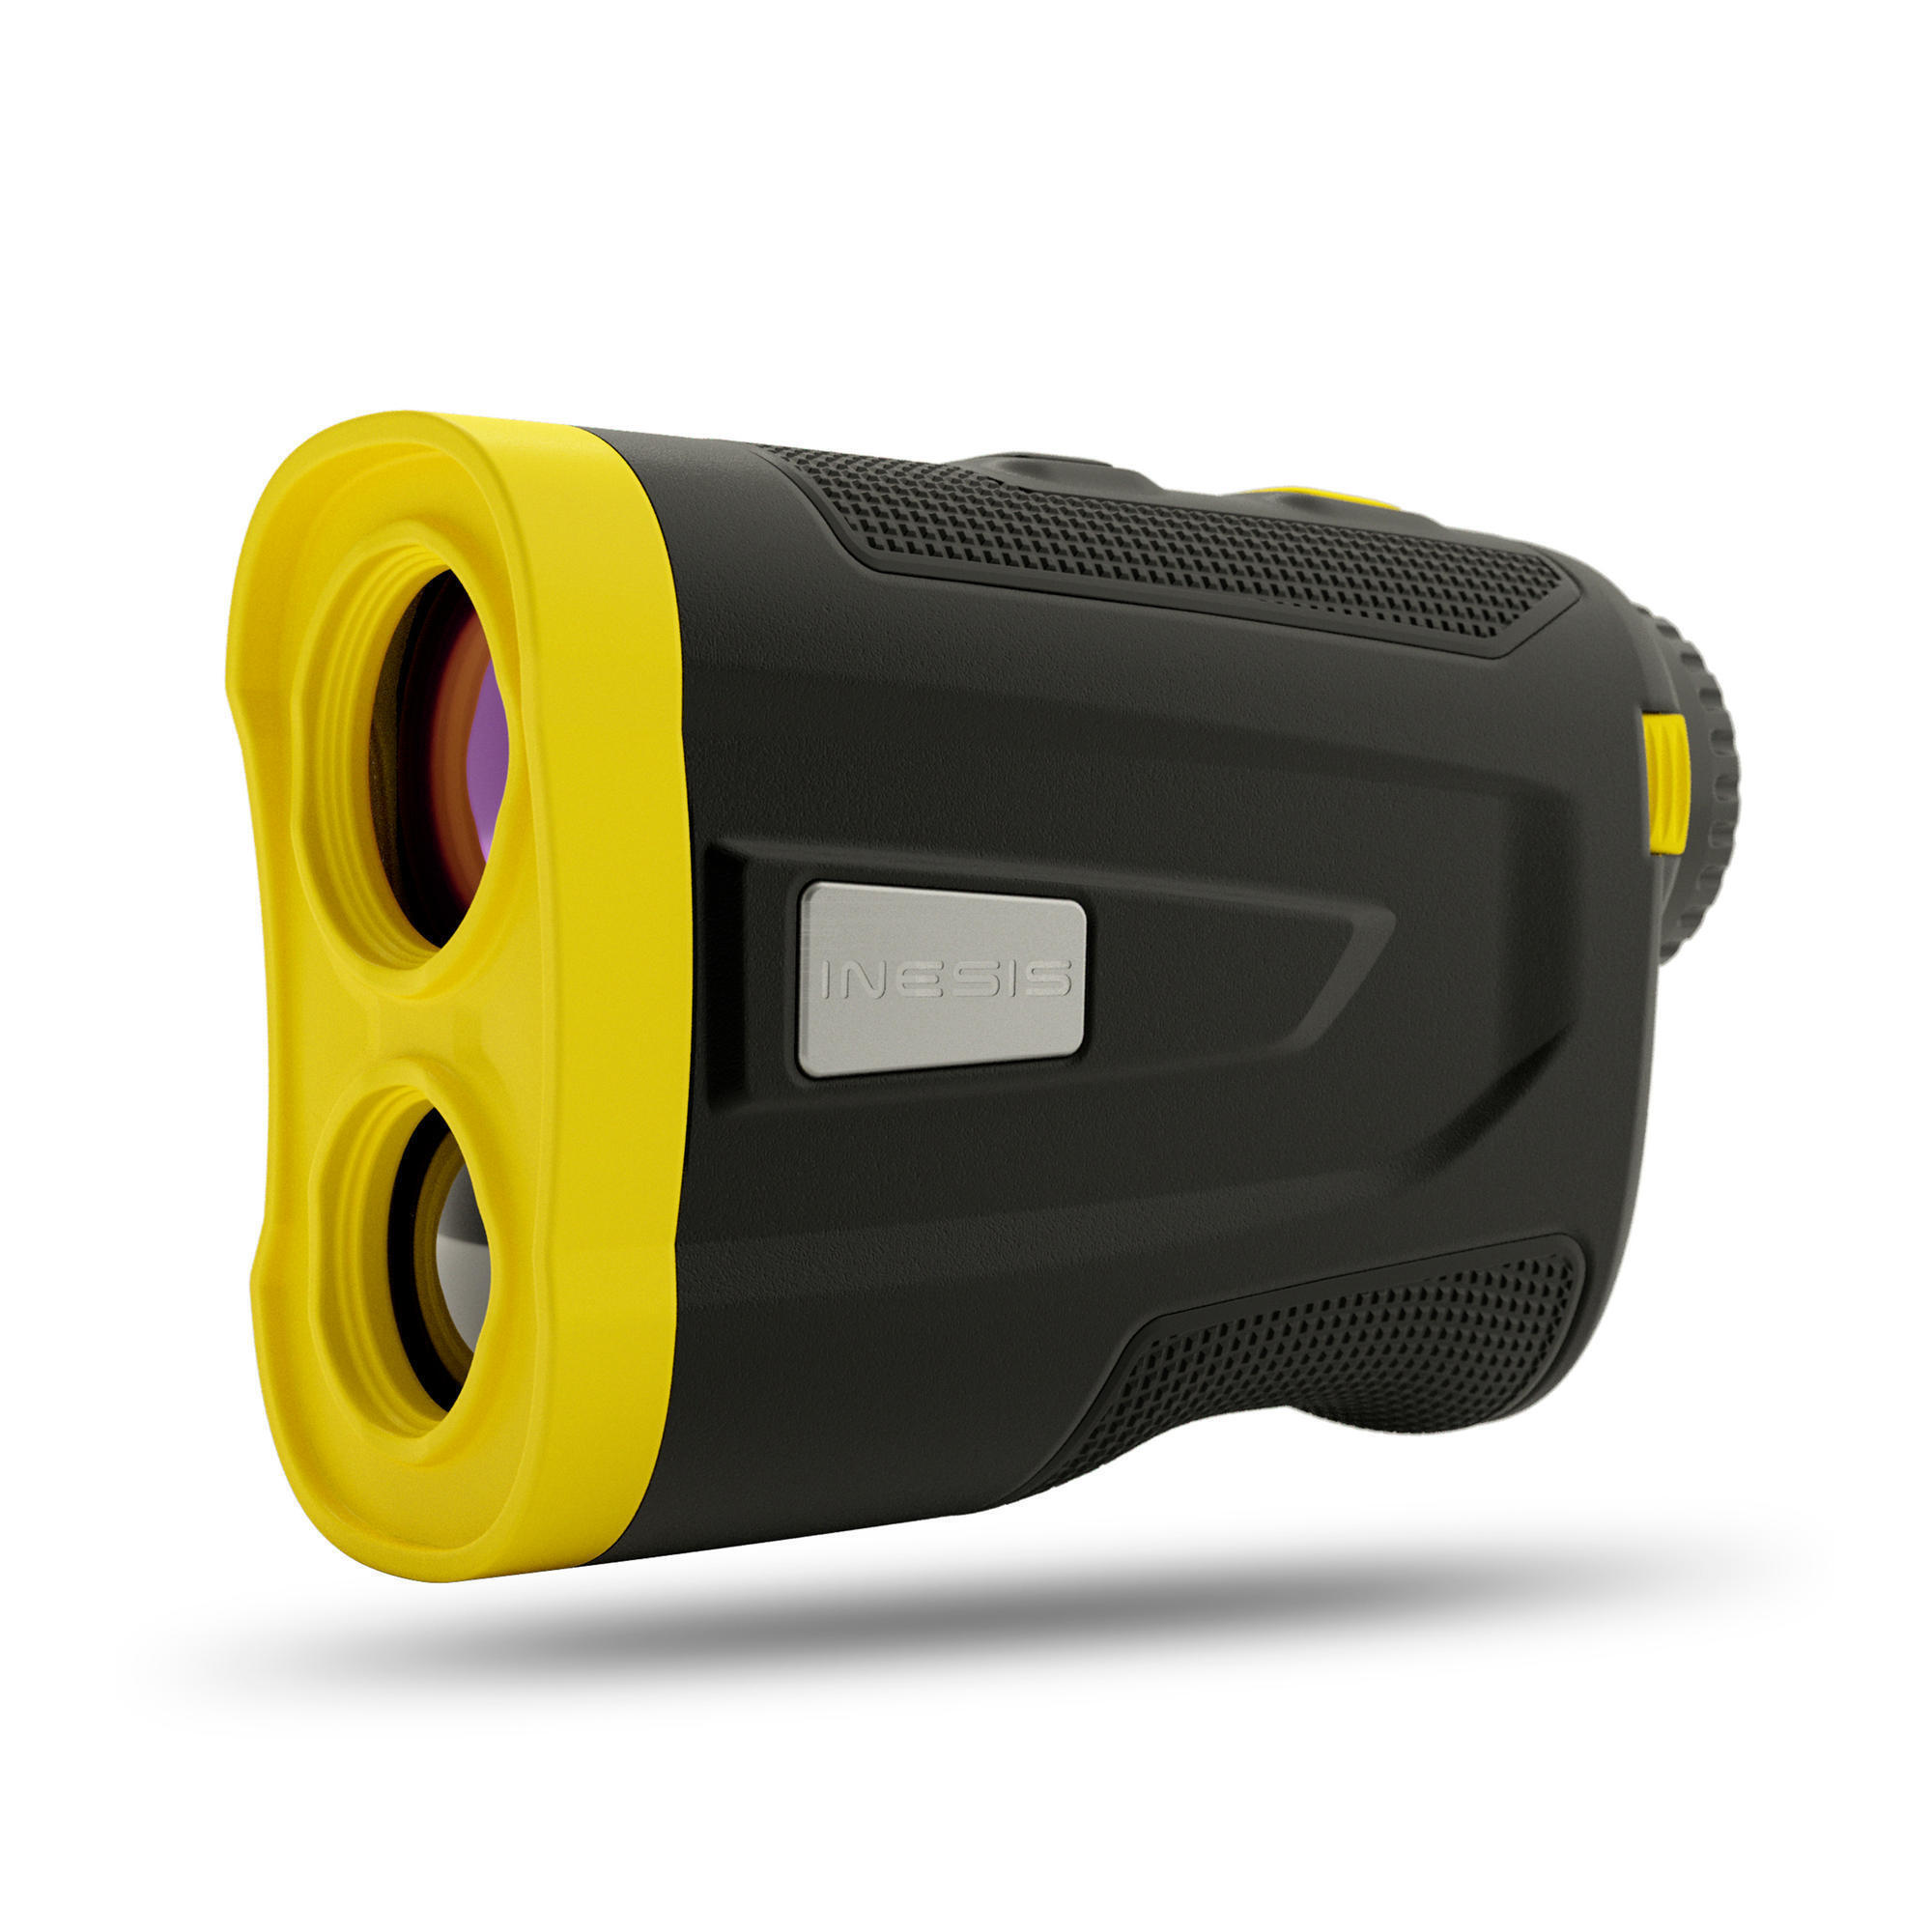 Лазерный дальномер для гольфа 900 INESIS, неоново-желтый 850 м 7x18 лазерный дальномер для гольфа мини дальномер для гольфа спортивный лазерный измеритель расстояния дальномер для гольфа для охоты